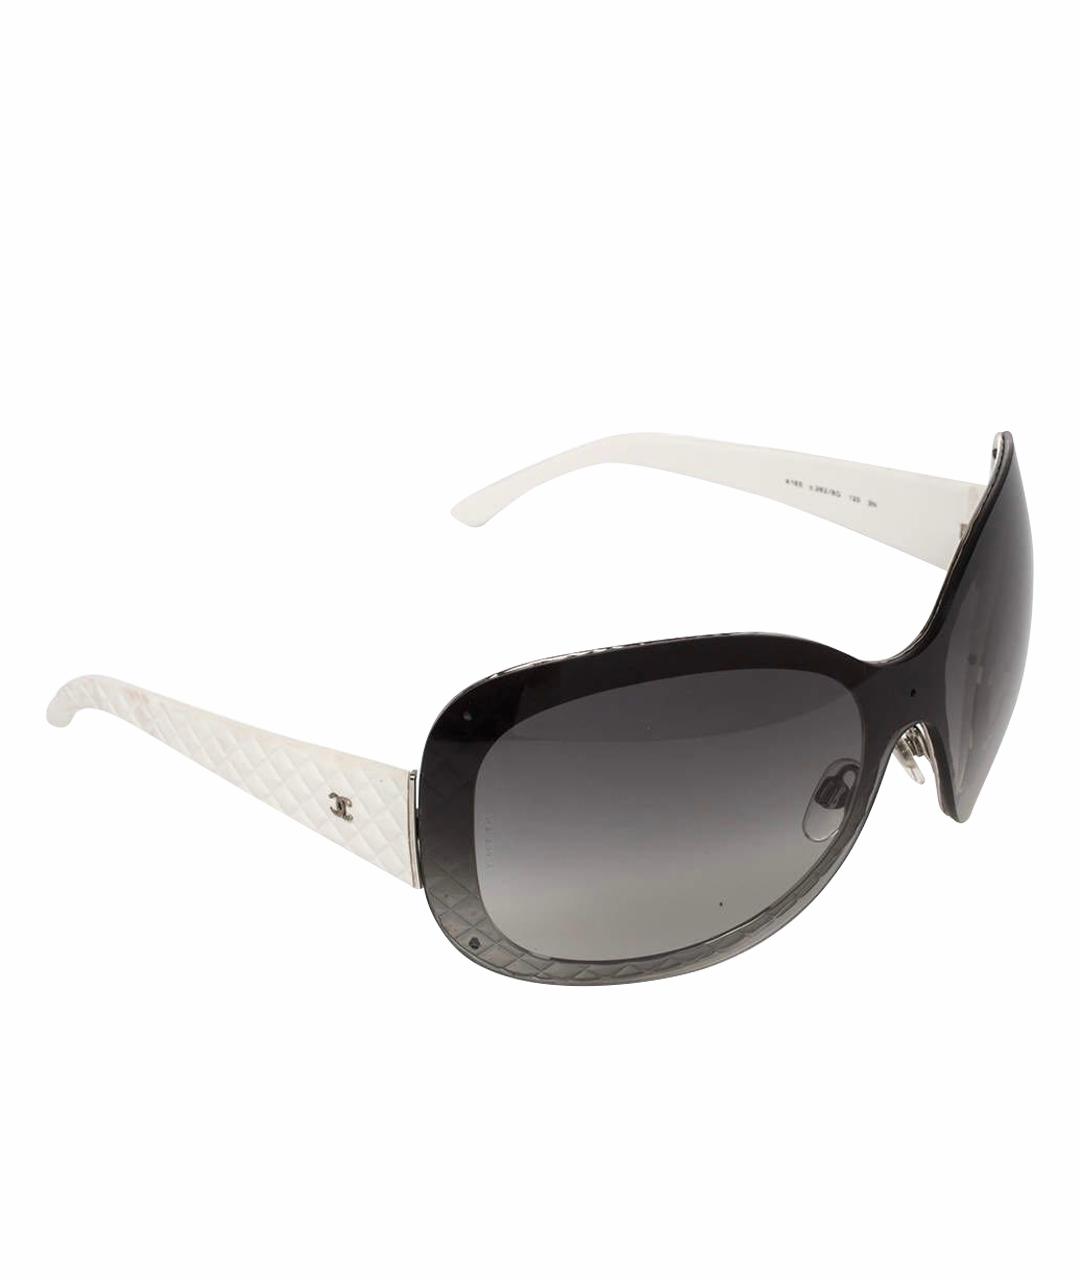 CHANEL PRE-OWNED Черные металлические солнцезащитные очки, фото 1